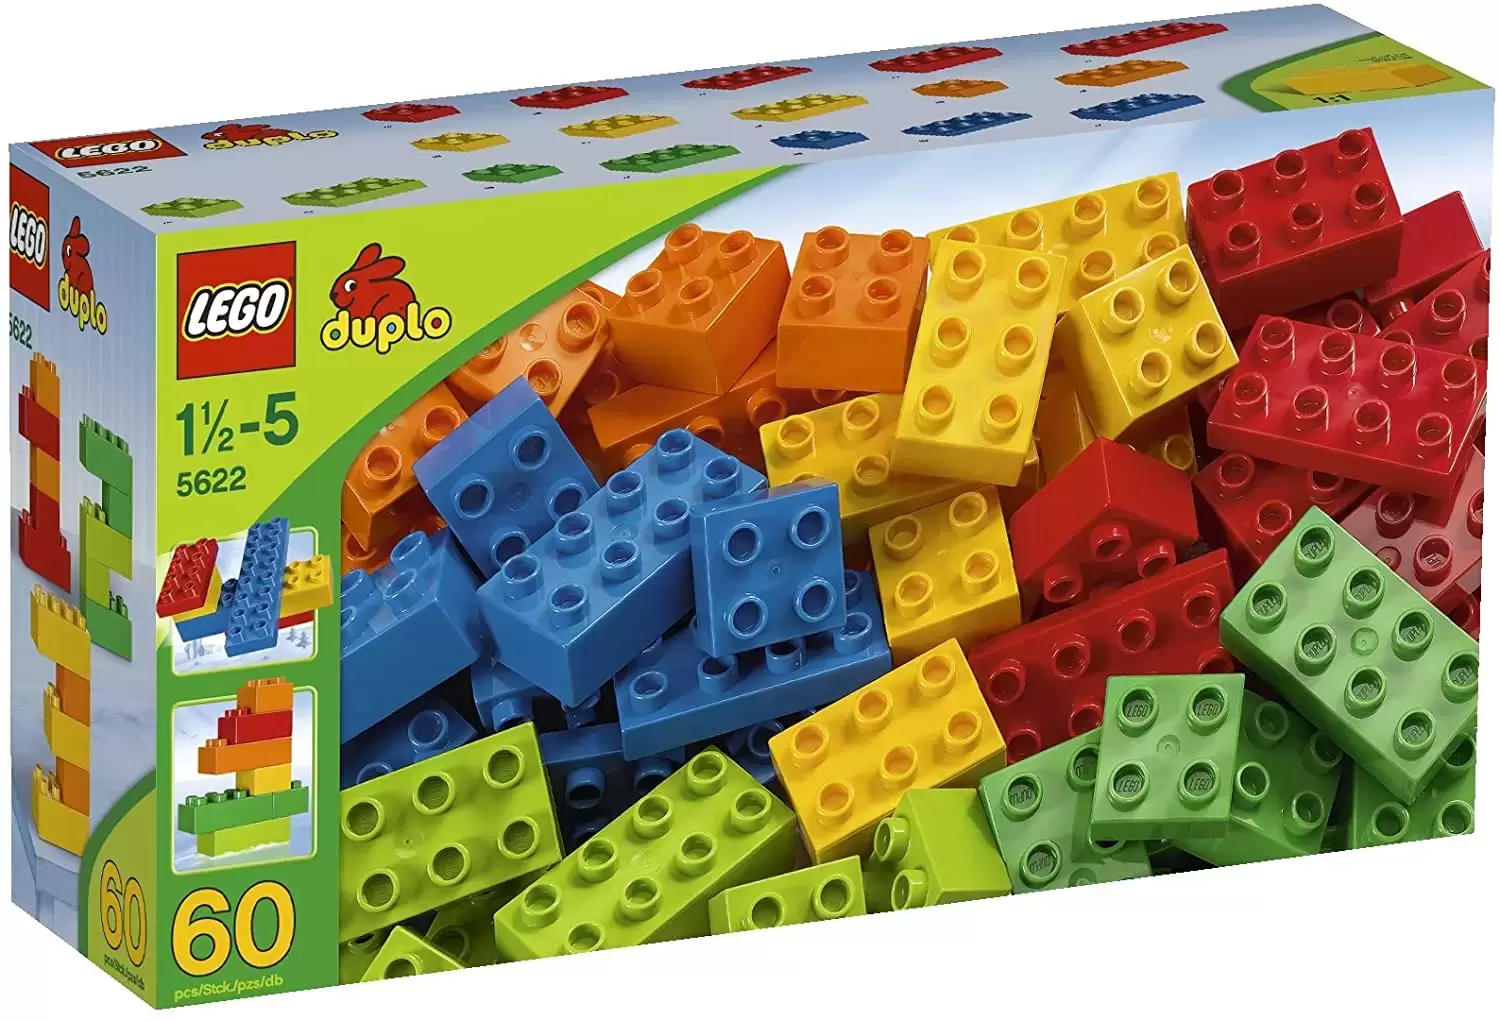 LEGO Duplo - Duplo Basic Bricks - Large